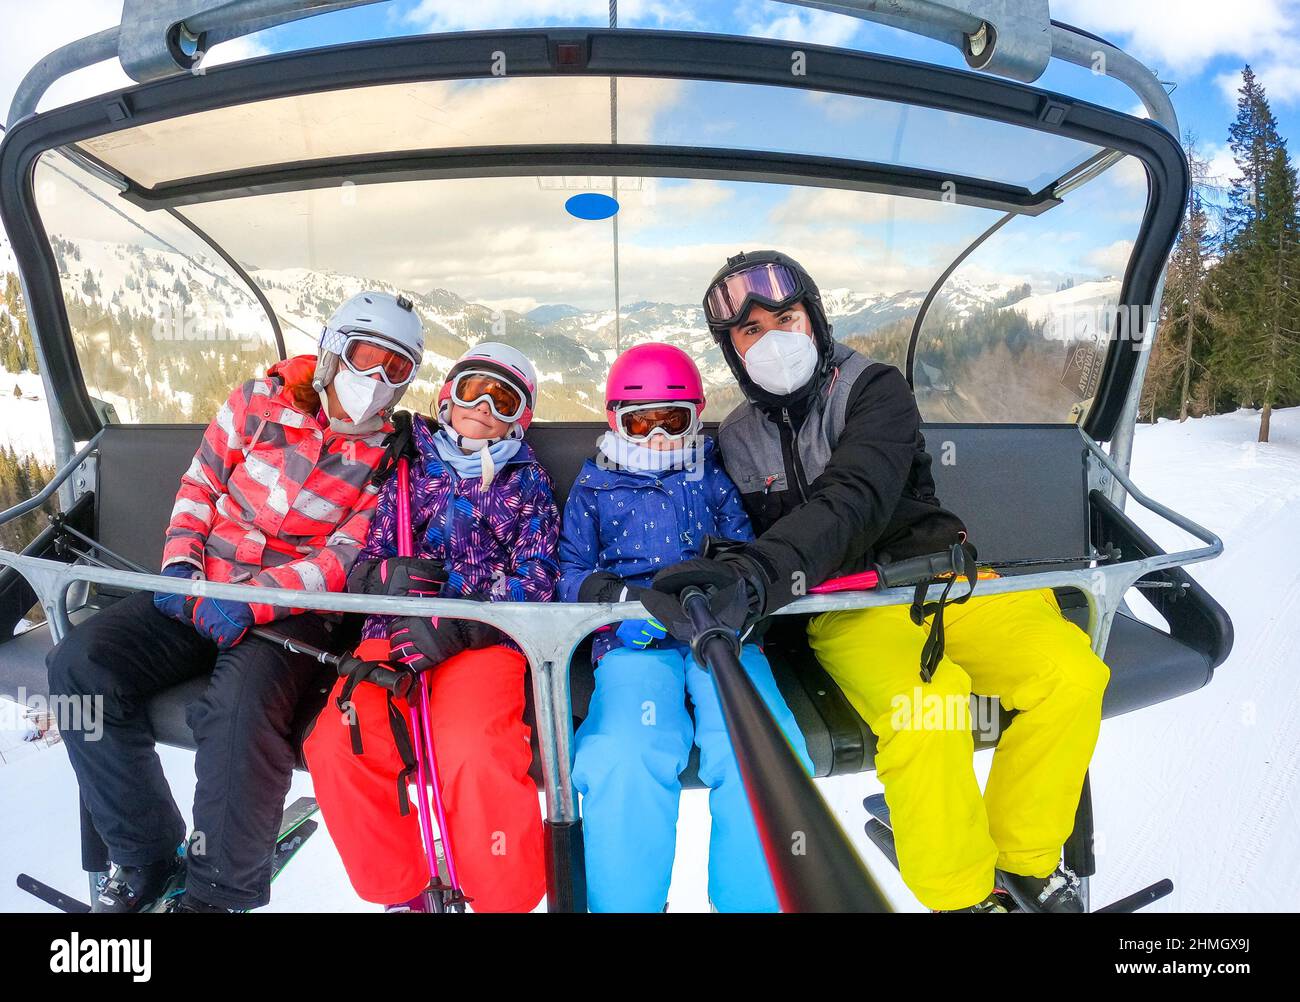 Familien Reiten Skilift Seilbahn auf Winterurlaub Skifahren. Familie auf Winterurlaub Skiausflug unter Selfie auf dem Skilift mit herrlichem Blick auf die Berge o Stockfoto